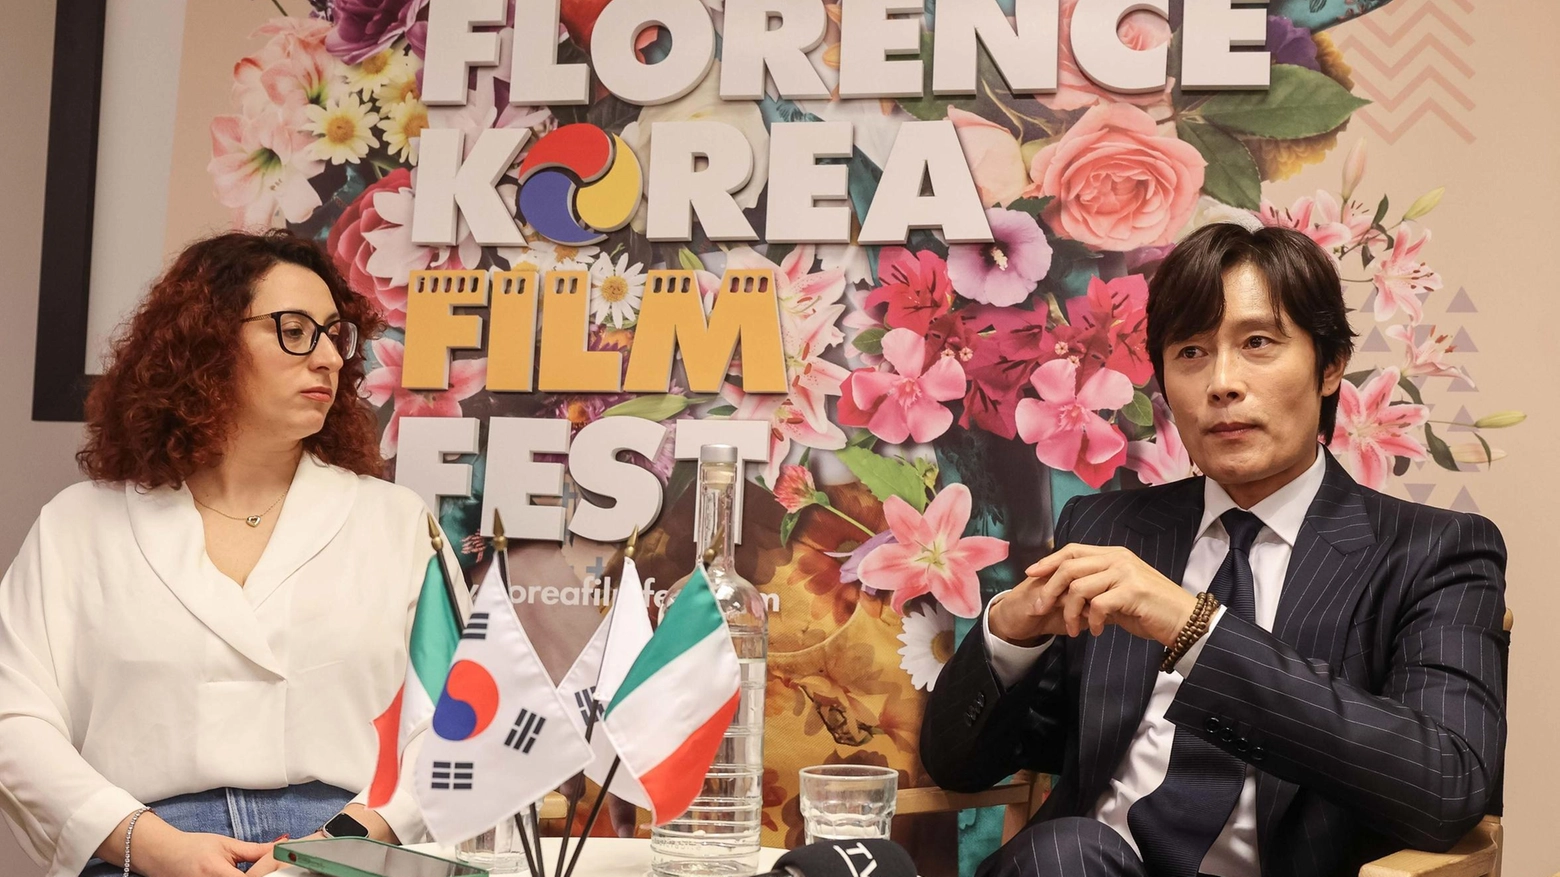 La star del cinema coreano Lee Byung-hun è ospite al Florence Korea Film Fest a Firenze, dove racconta della sua carriera e riceve un premio. Parla della sua passione per la recitazione e dei successi internazionali come Squid Game. Condivide aneddoti sul set e consigli per i giovani attori.